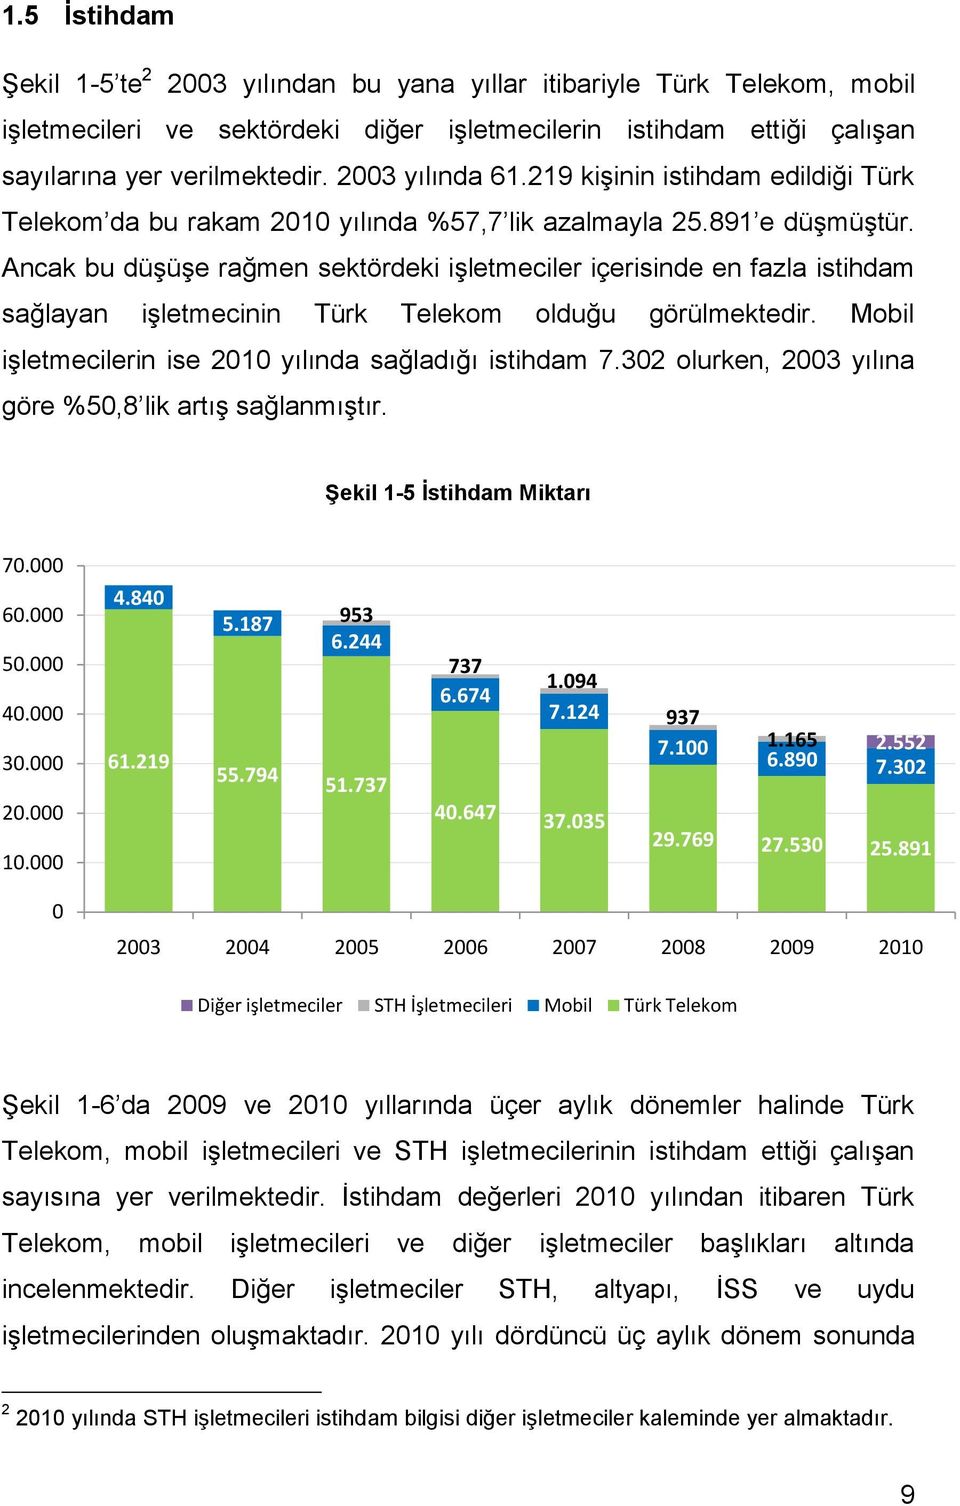 Ancak bu düşüşe rağmen sektördeki işletmeciler içerisinde en fazla istihdam sağlayan işletmecinin Türk Telekom olduğu görülmektedir. Mobil işletmecilerin ise 2010 yılında sağladığı istihdam 7.